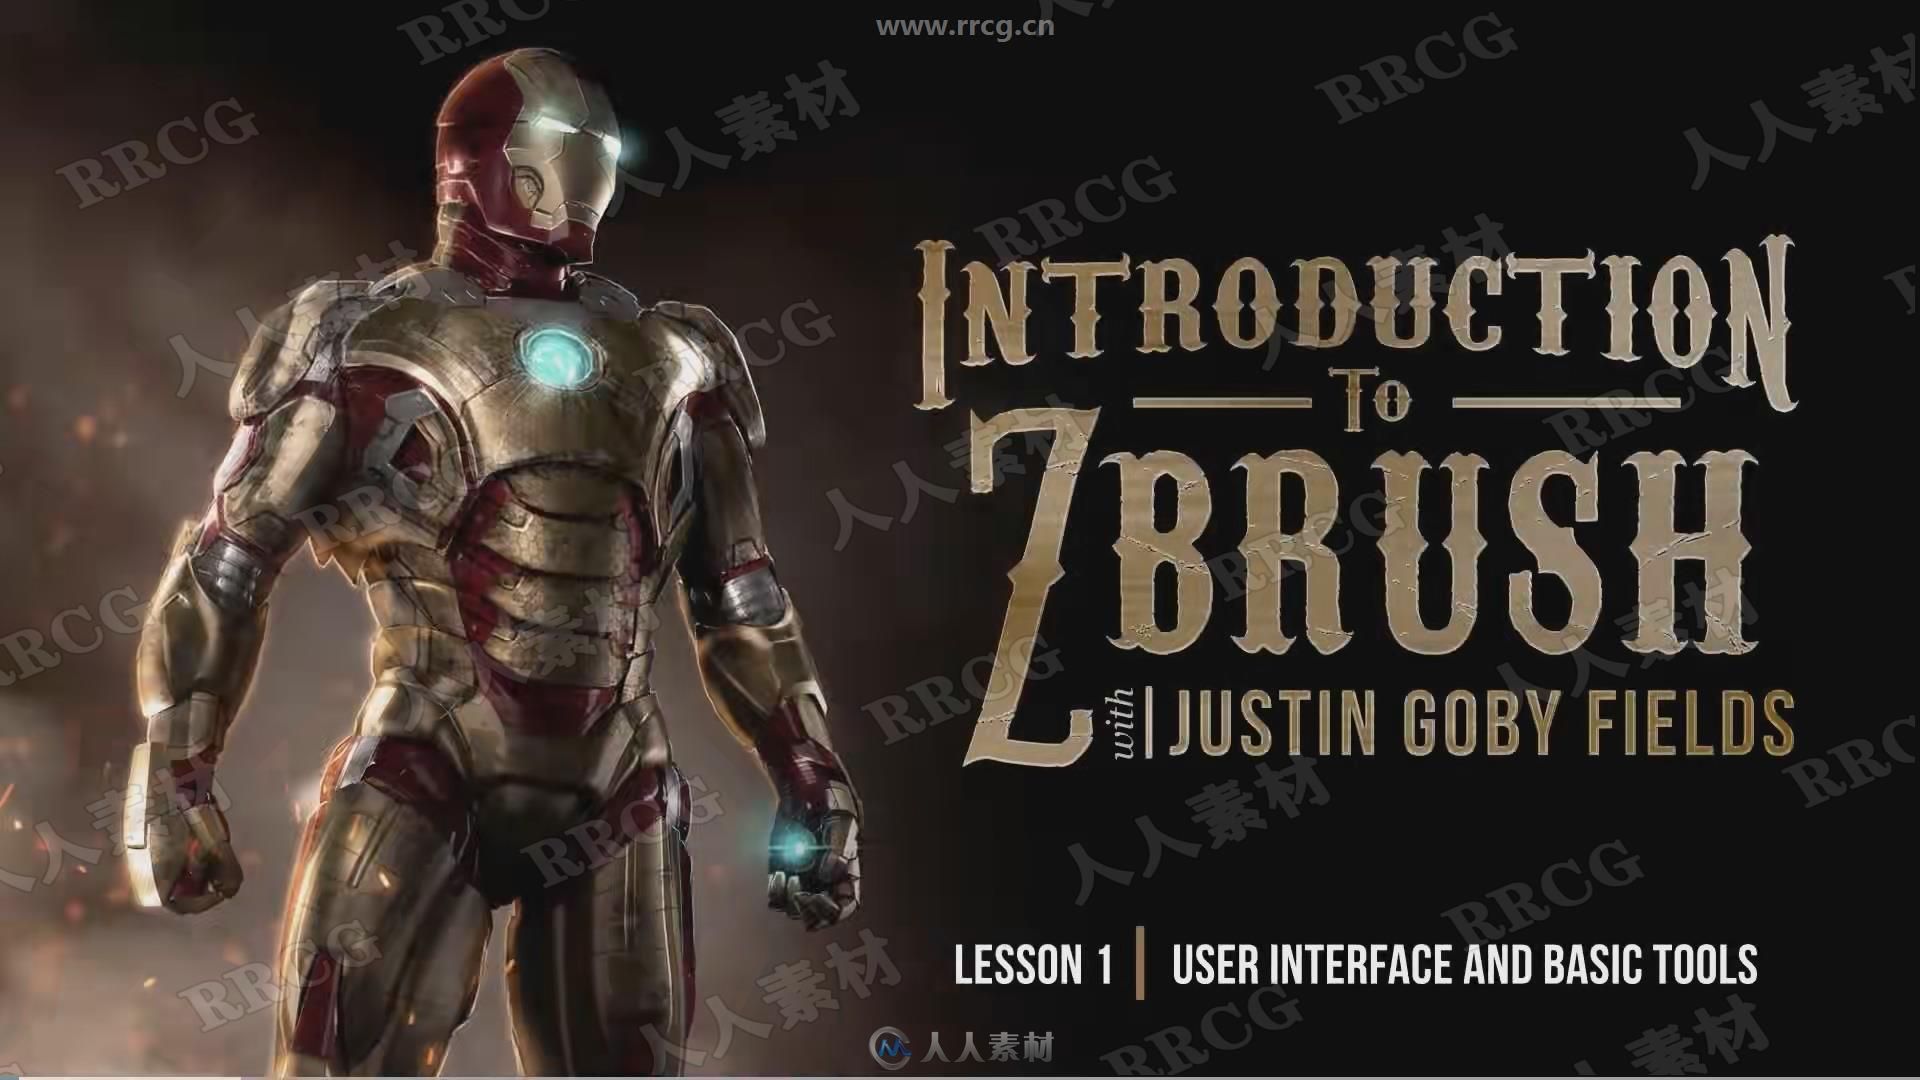 ZBrush数字雕刻无经验零门槛入门训练视频教程